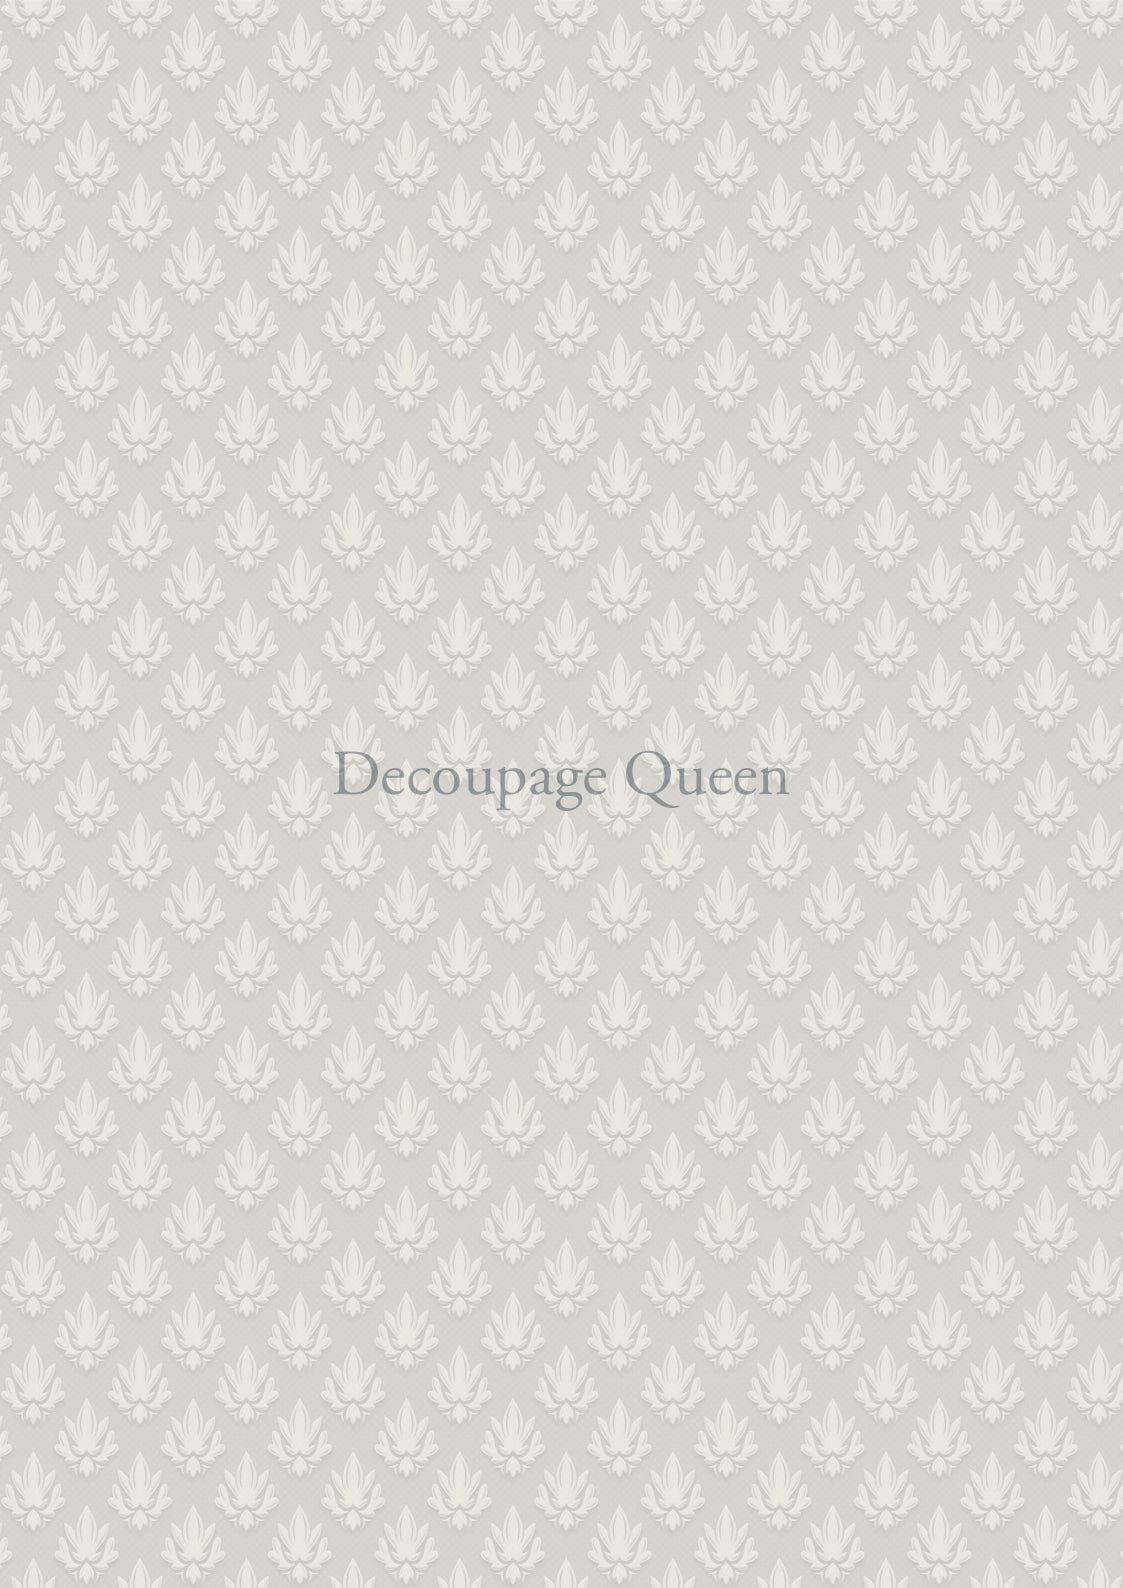 Delicate Tiles Paper A3 Decoupage Queen